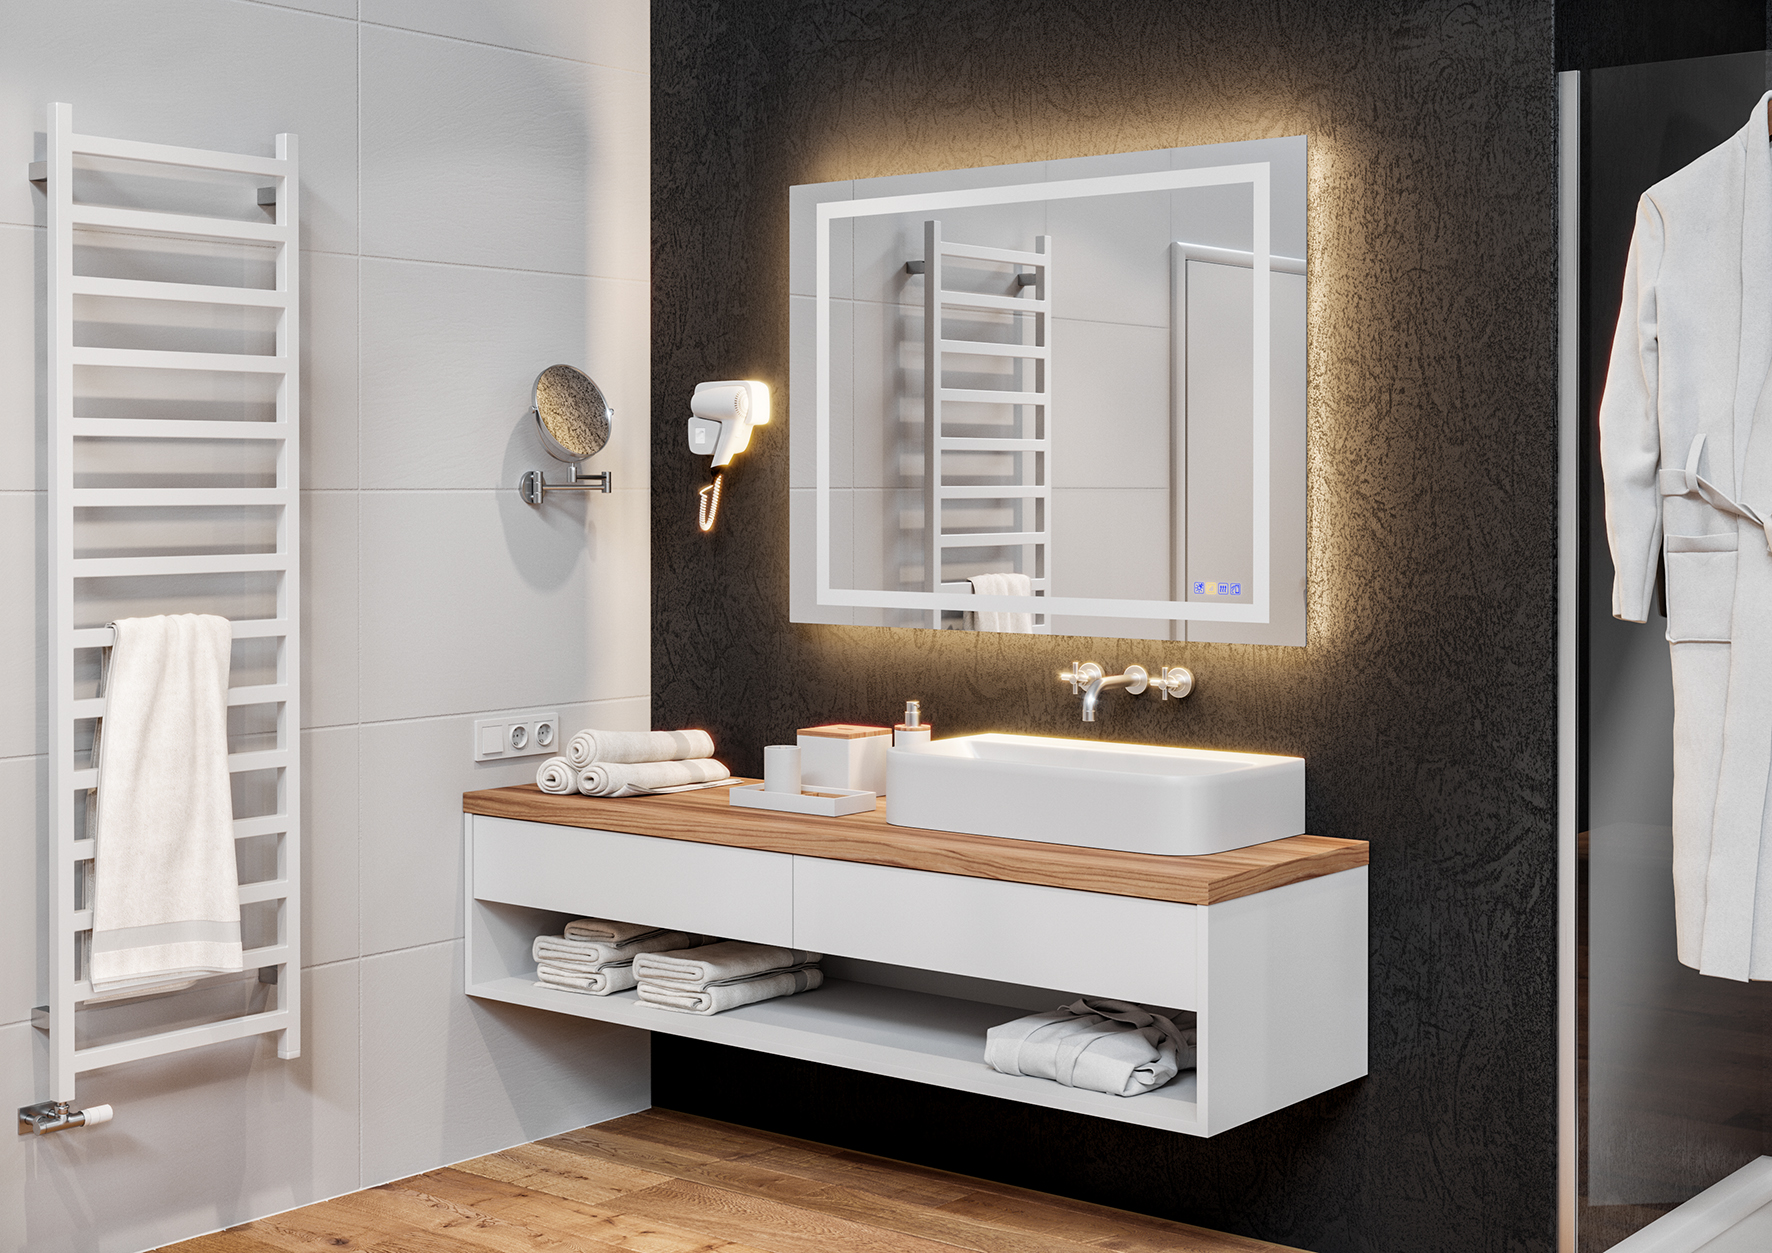 Dieser von Häfele entwickelte Badspiegel ist eine absolute Innovation. In ihm stecken verschiedene Lichtszenarien, ein Soundsystem und eine Heizung, die das Beschlagen des Spiegels wirkungsvoll verhindert.